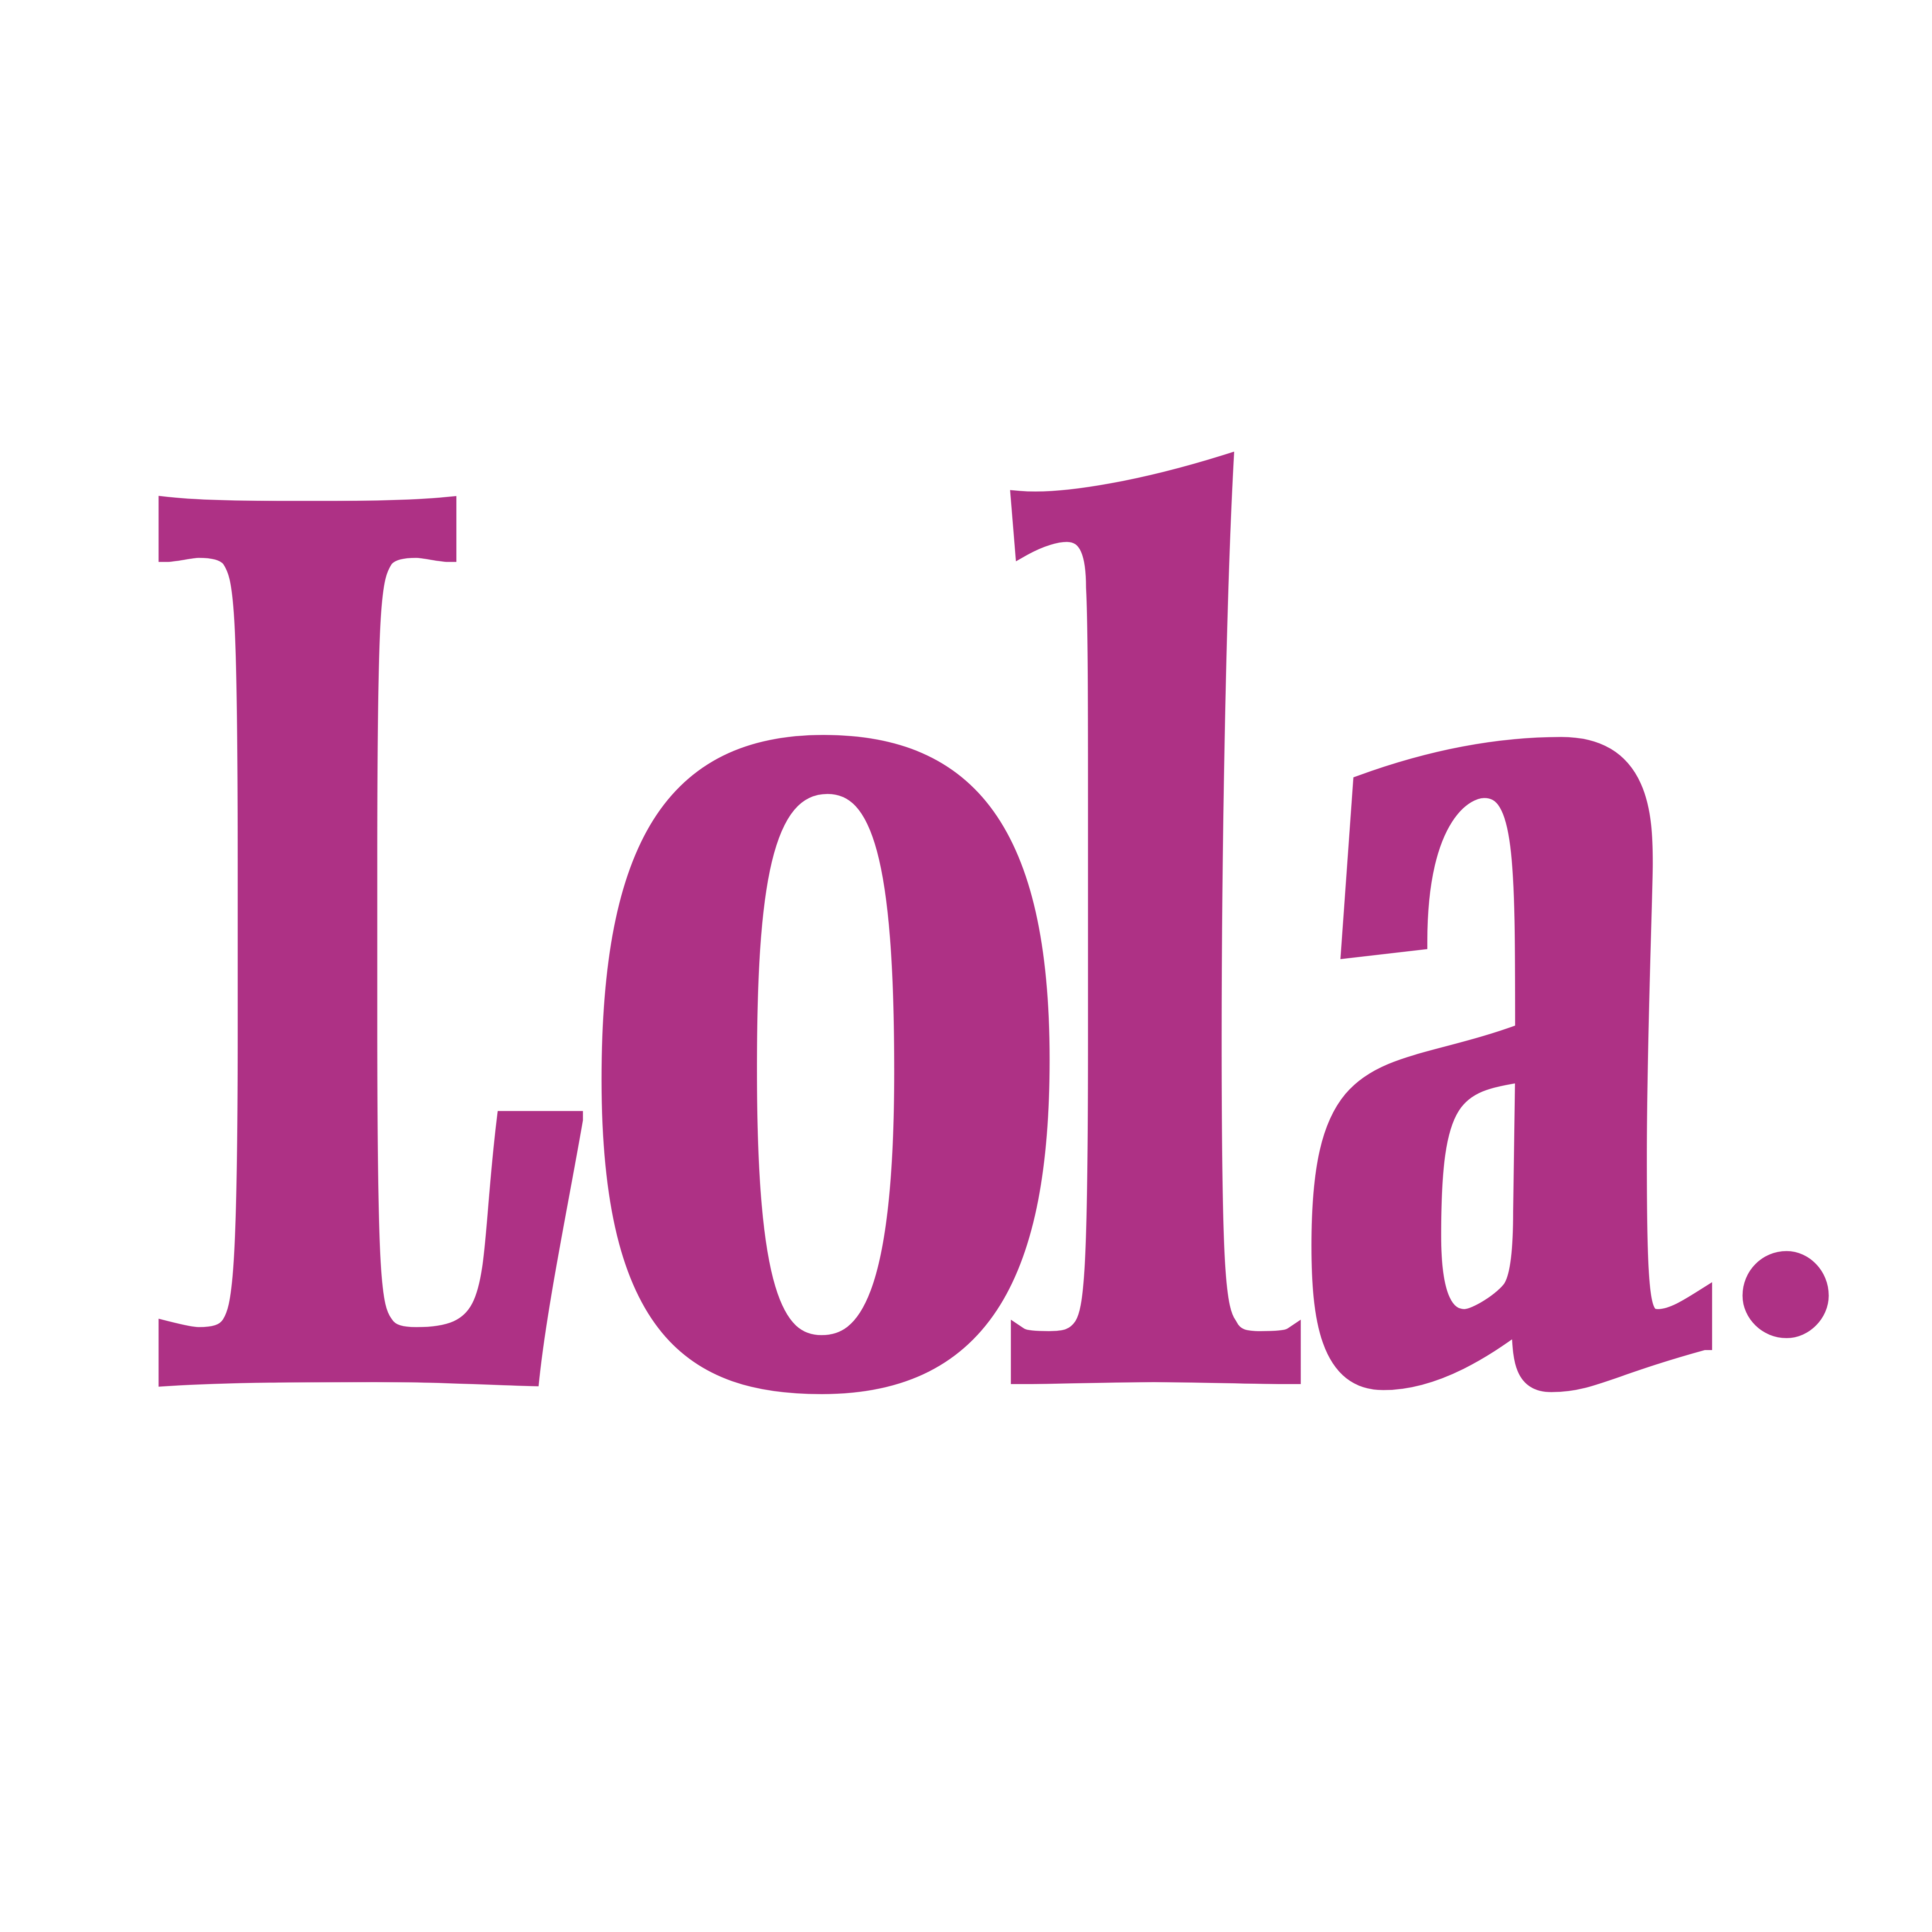 Lola Logo - Lola – Logos Download